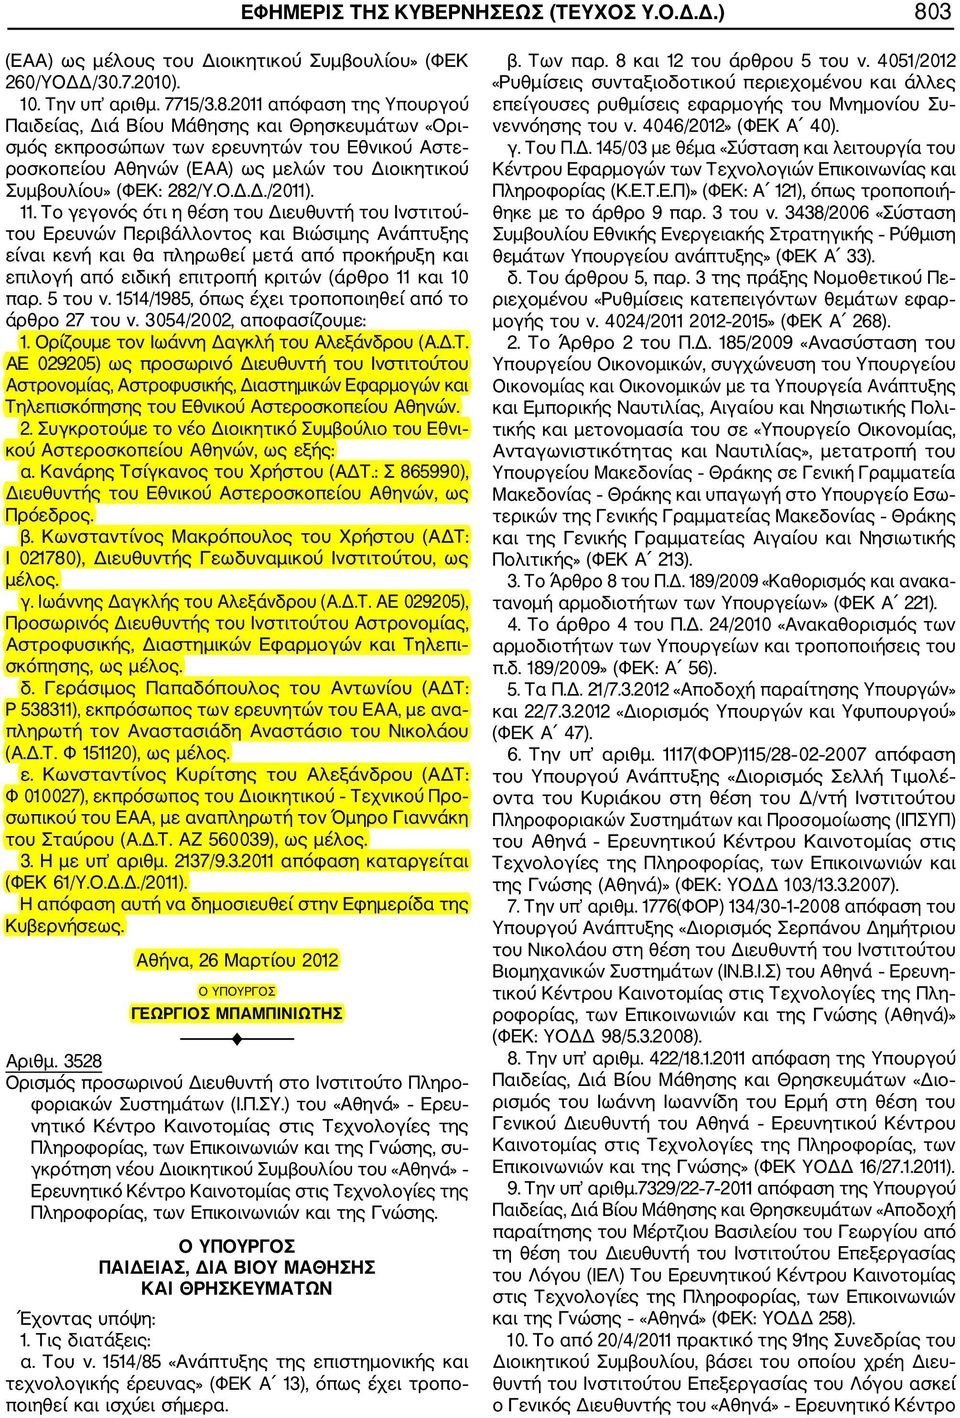 2011 απόφαση της Υπουργού Παιδείας, Διά Βίου Μάθησης και Θρησκευμάτων «Ορι σμός εκπροσώπων των ερευνητών του Εθνικού Αστε ροσκοπείου Αθηνών (ΕΑΑ) ως μελών του Διοικητικού Συμβουλίου» (ΦΕΚ: 282/Υ.Ο.Δ.Δ./2011).